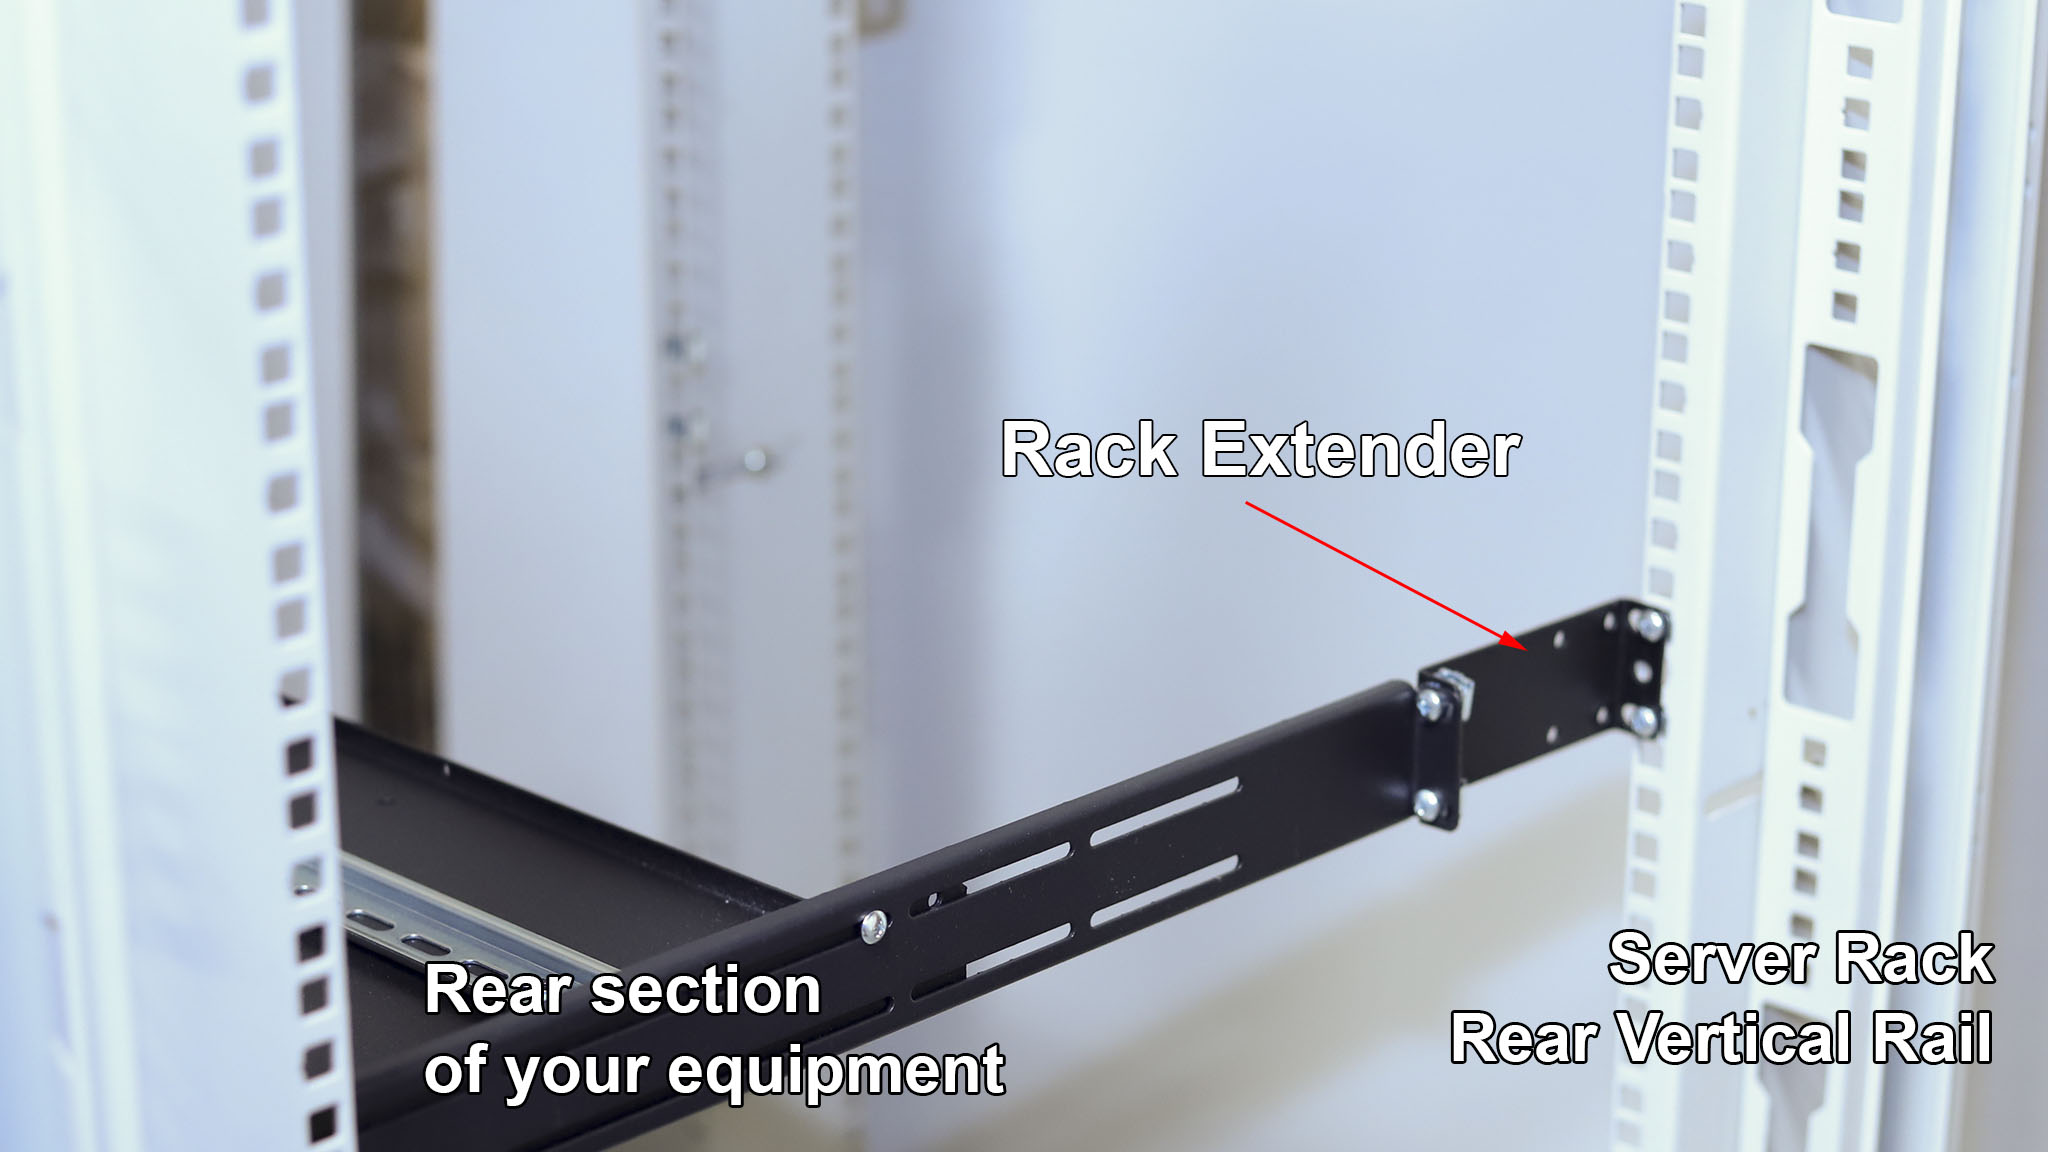 What is IAB102V10-3U rack extender